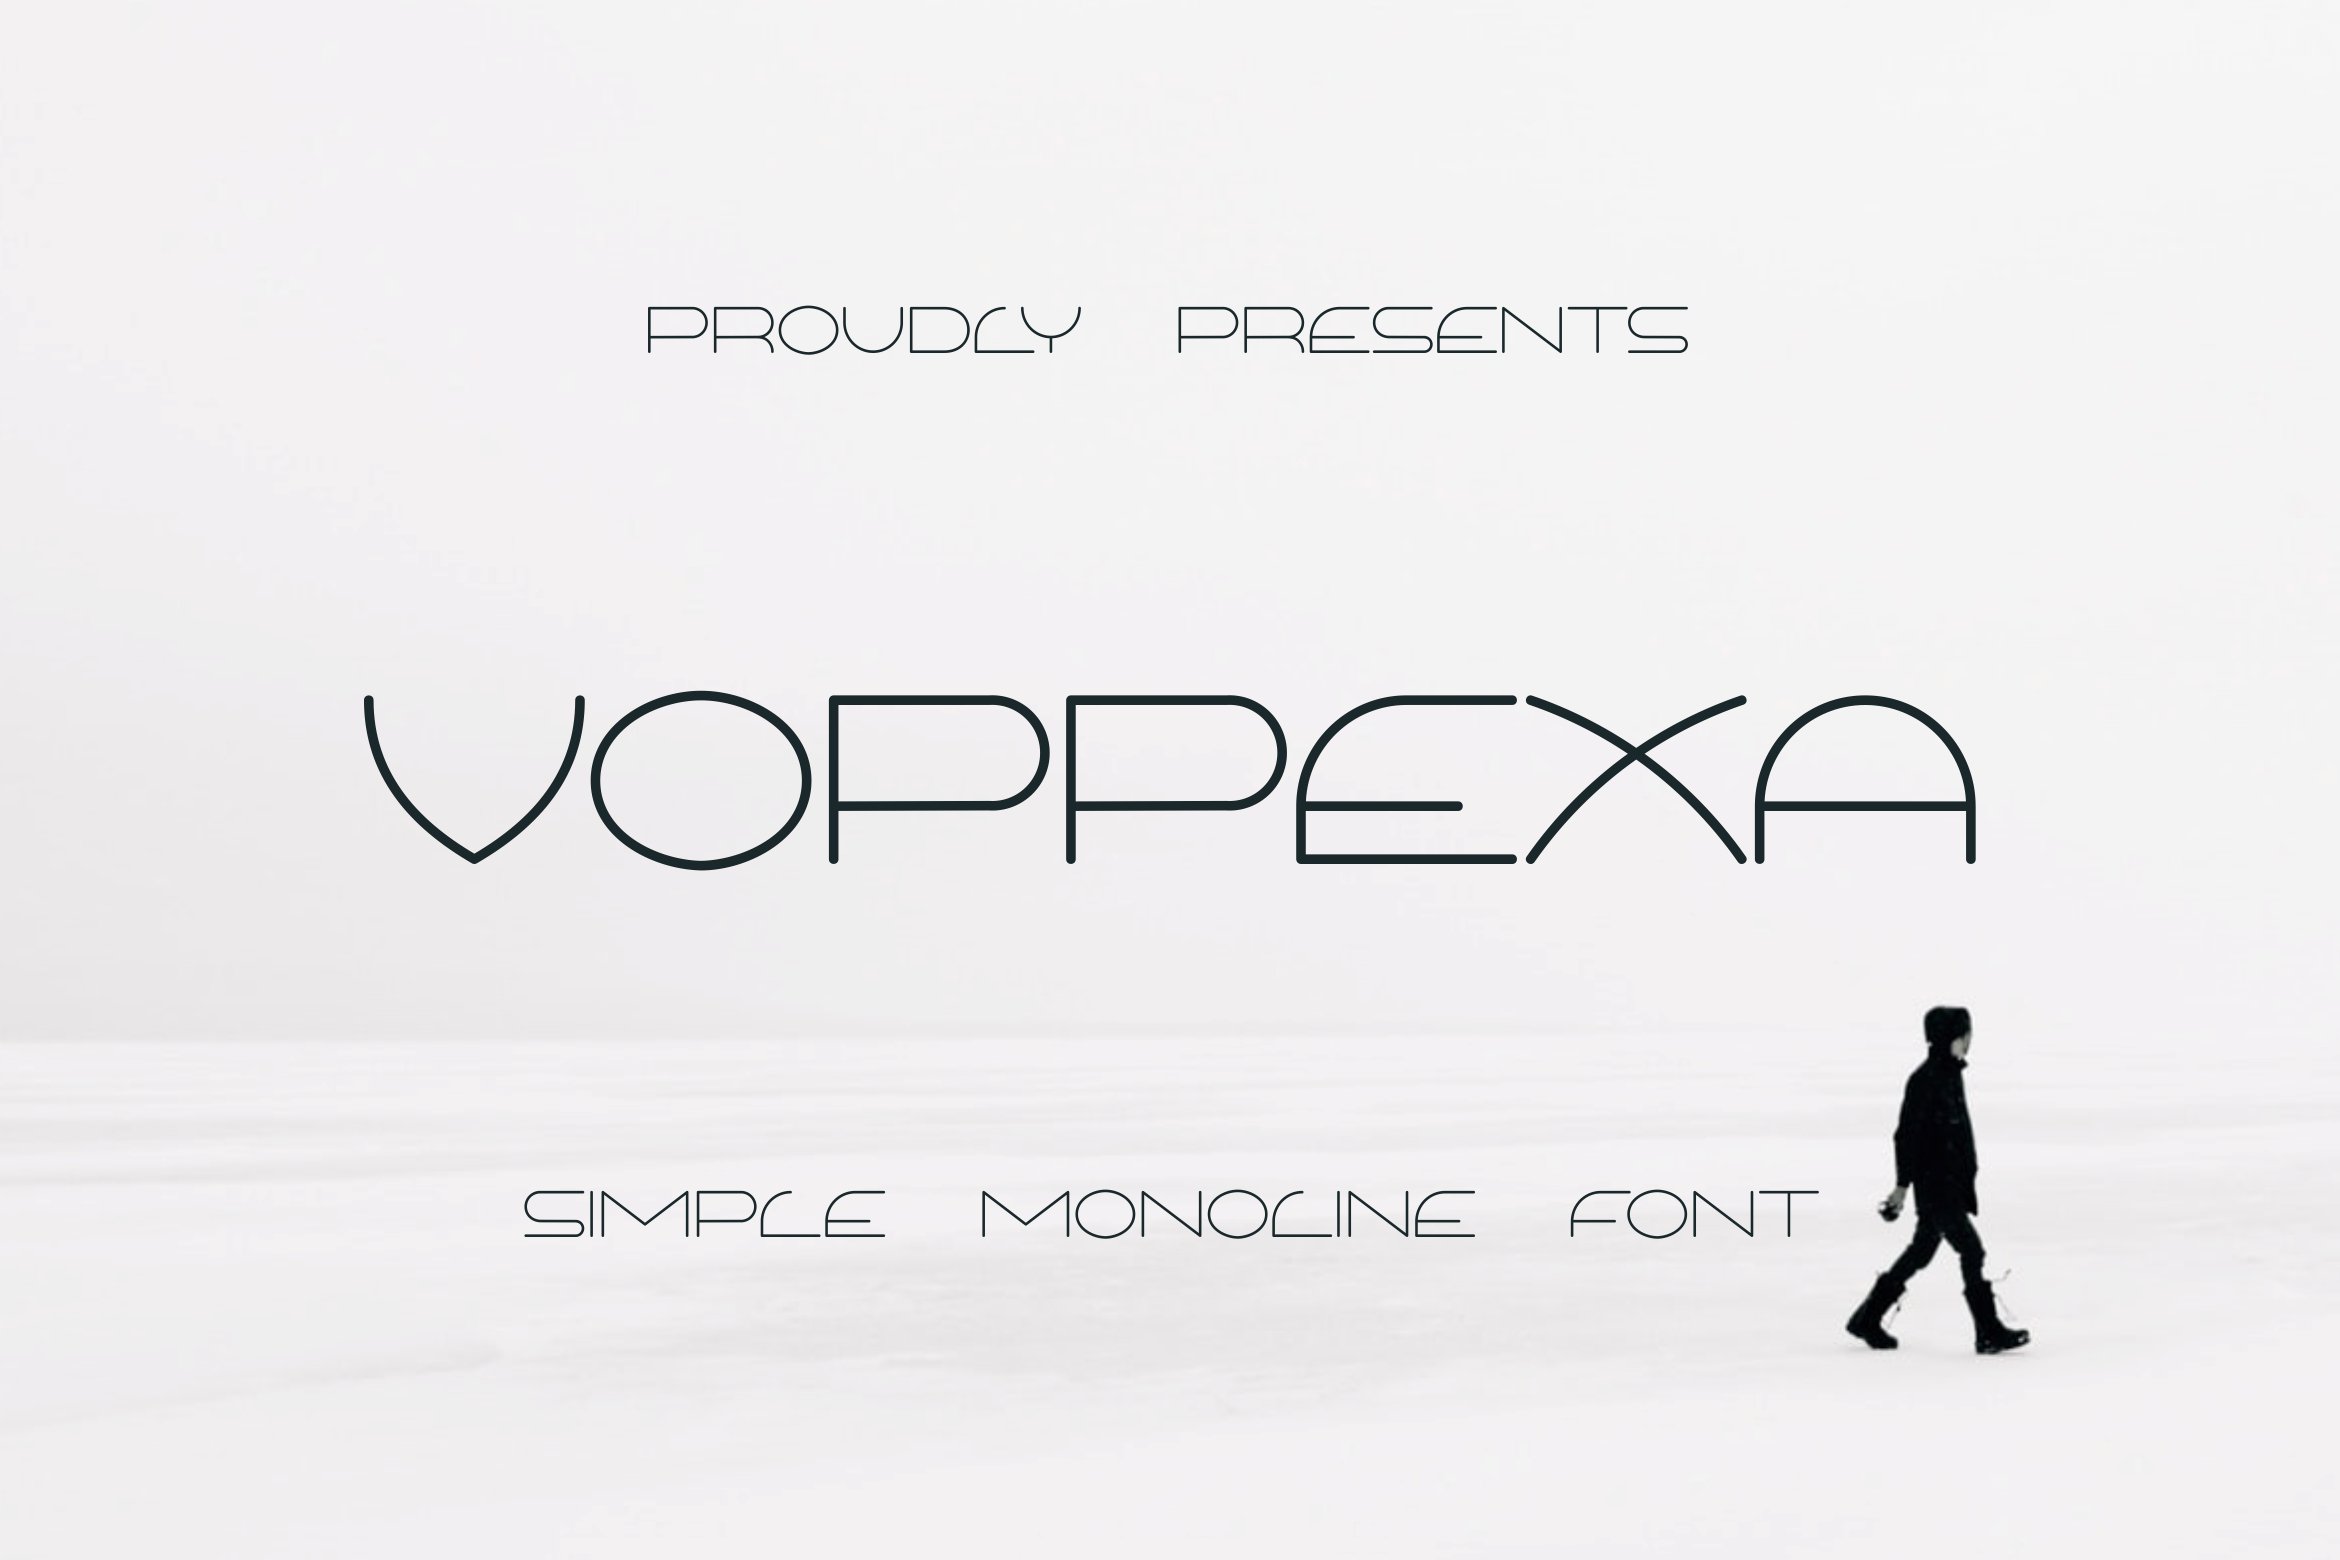 Шрифт Voppexa